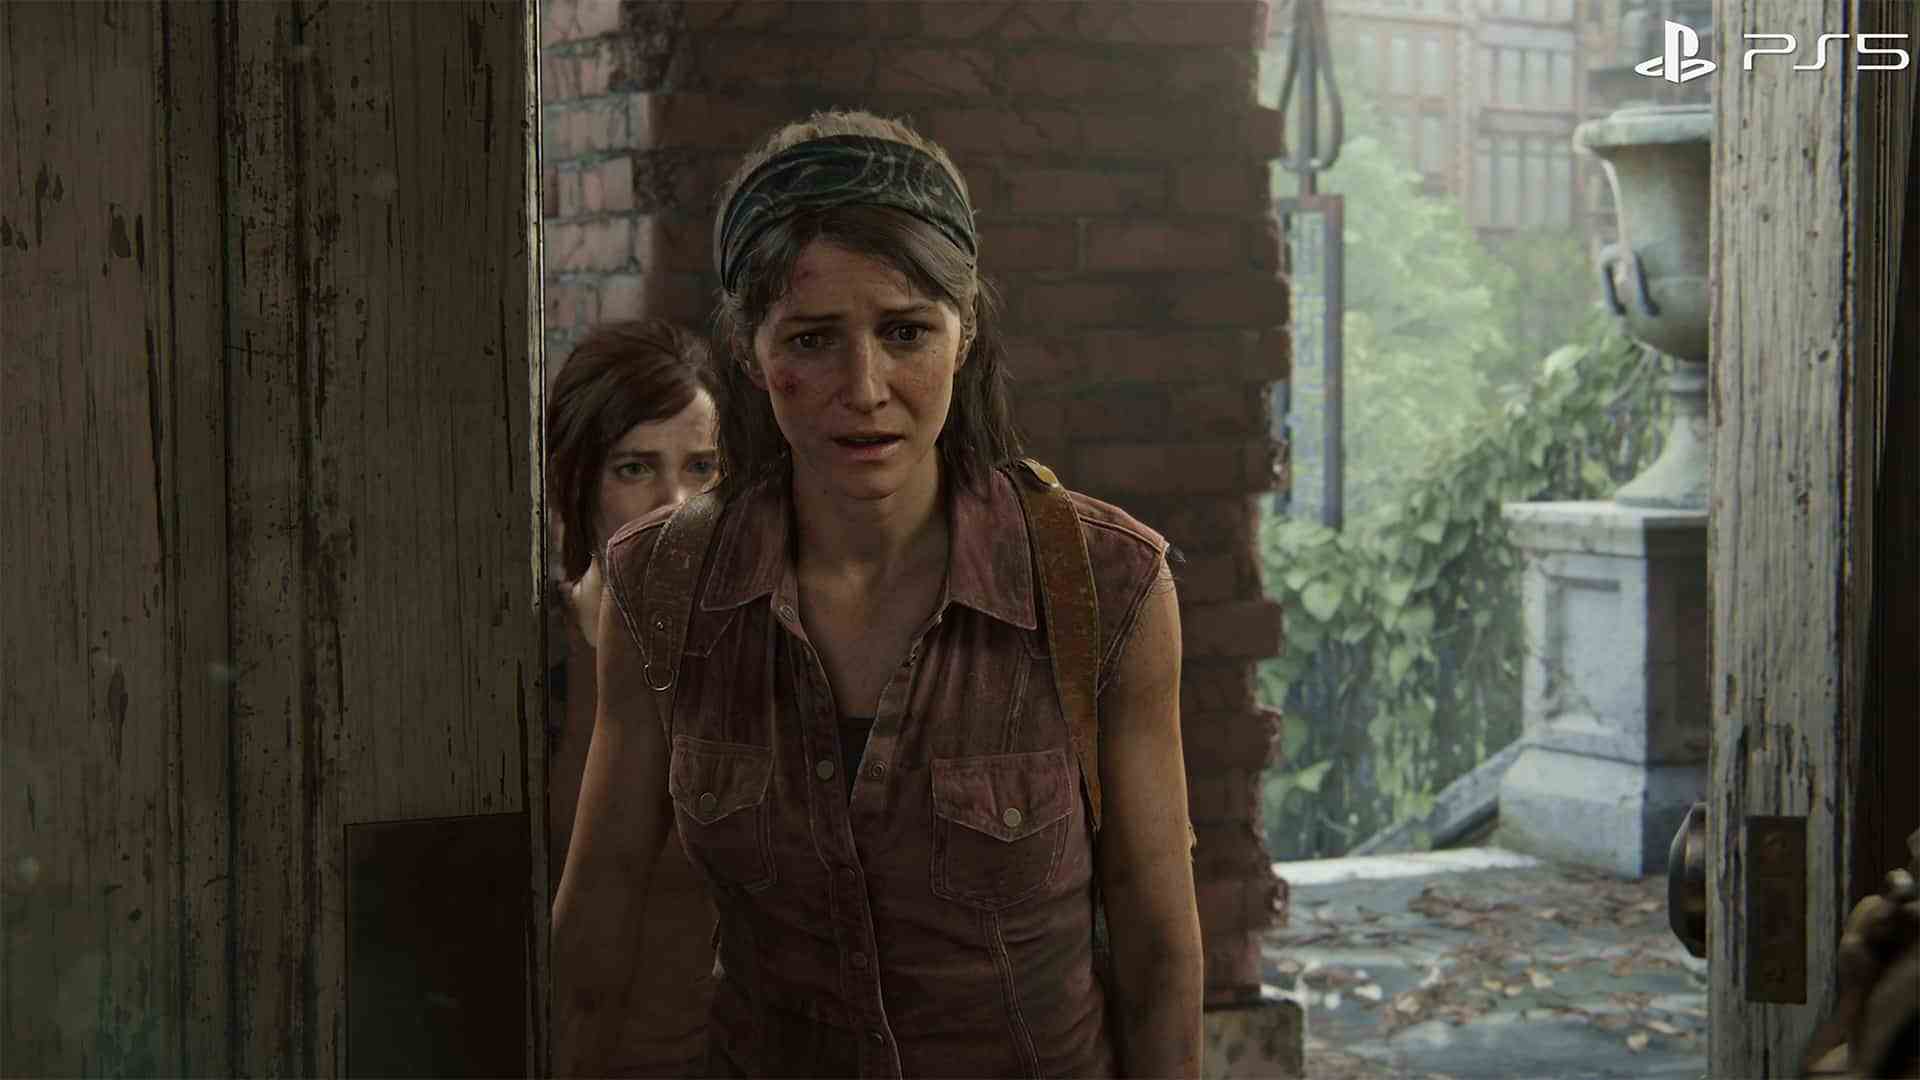 Naughty Dog The Last of Us Part I öffnet die Tür für kleinere eigenständige Episoden einer episodischen Fortsetzung mit einzigartigen Charaktergeschichten